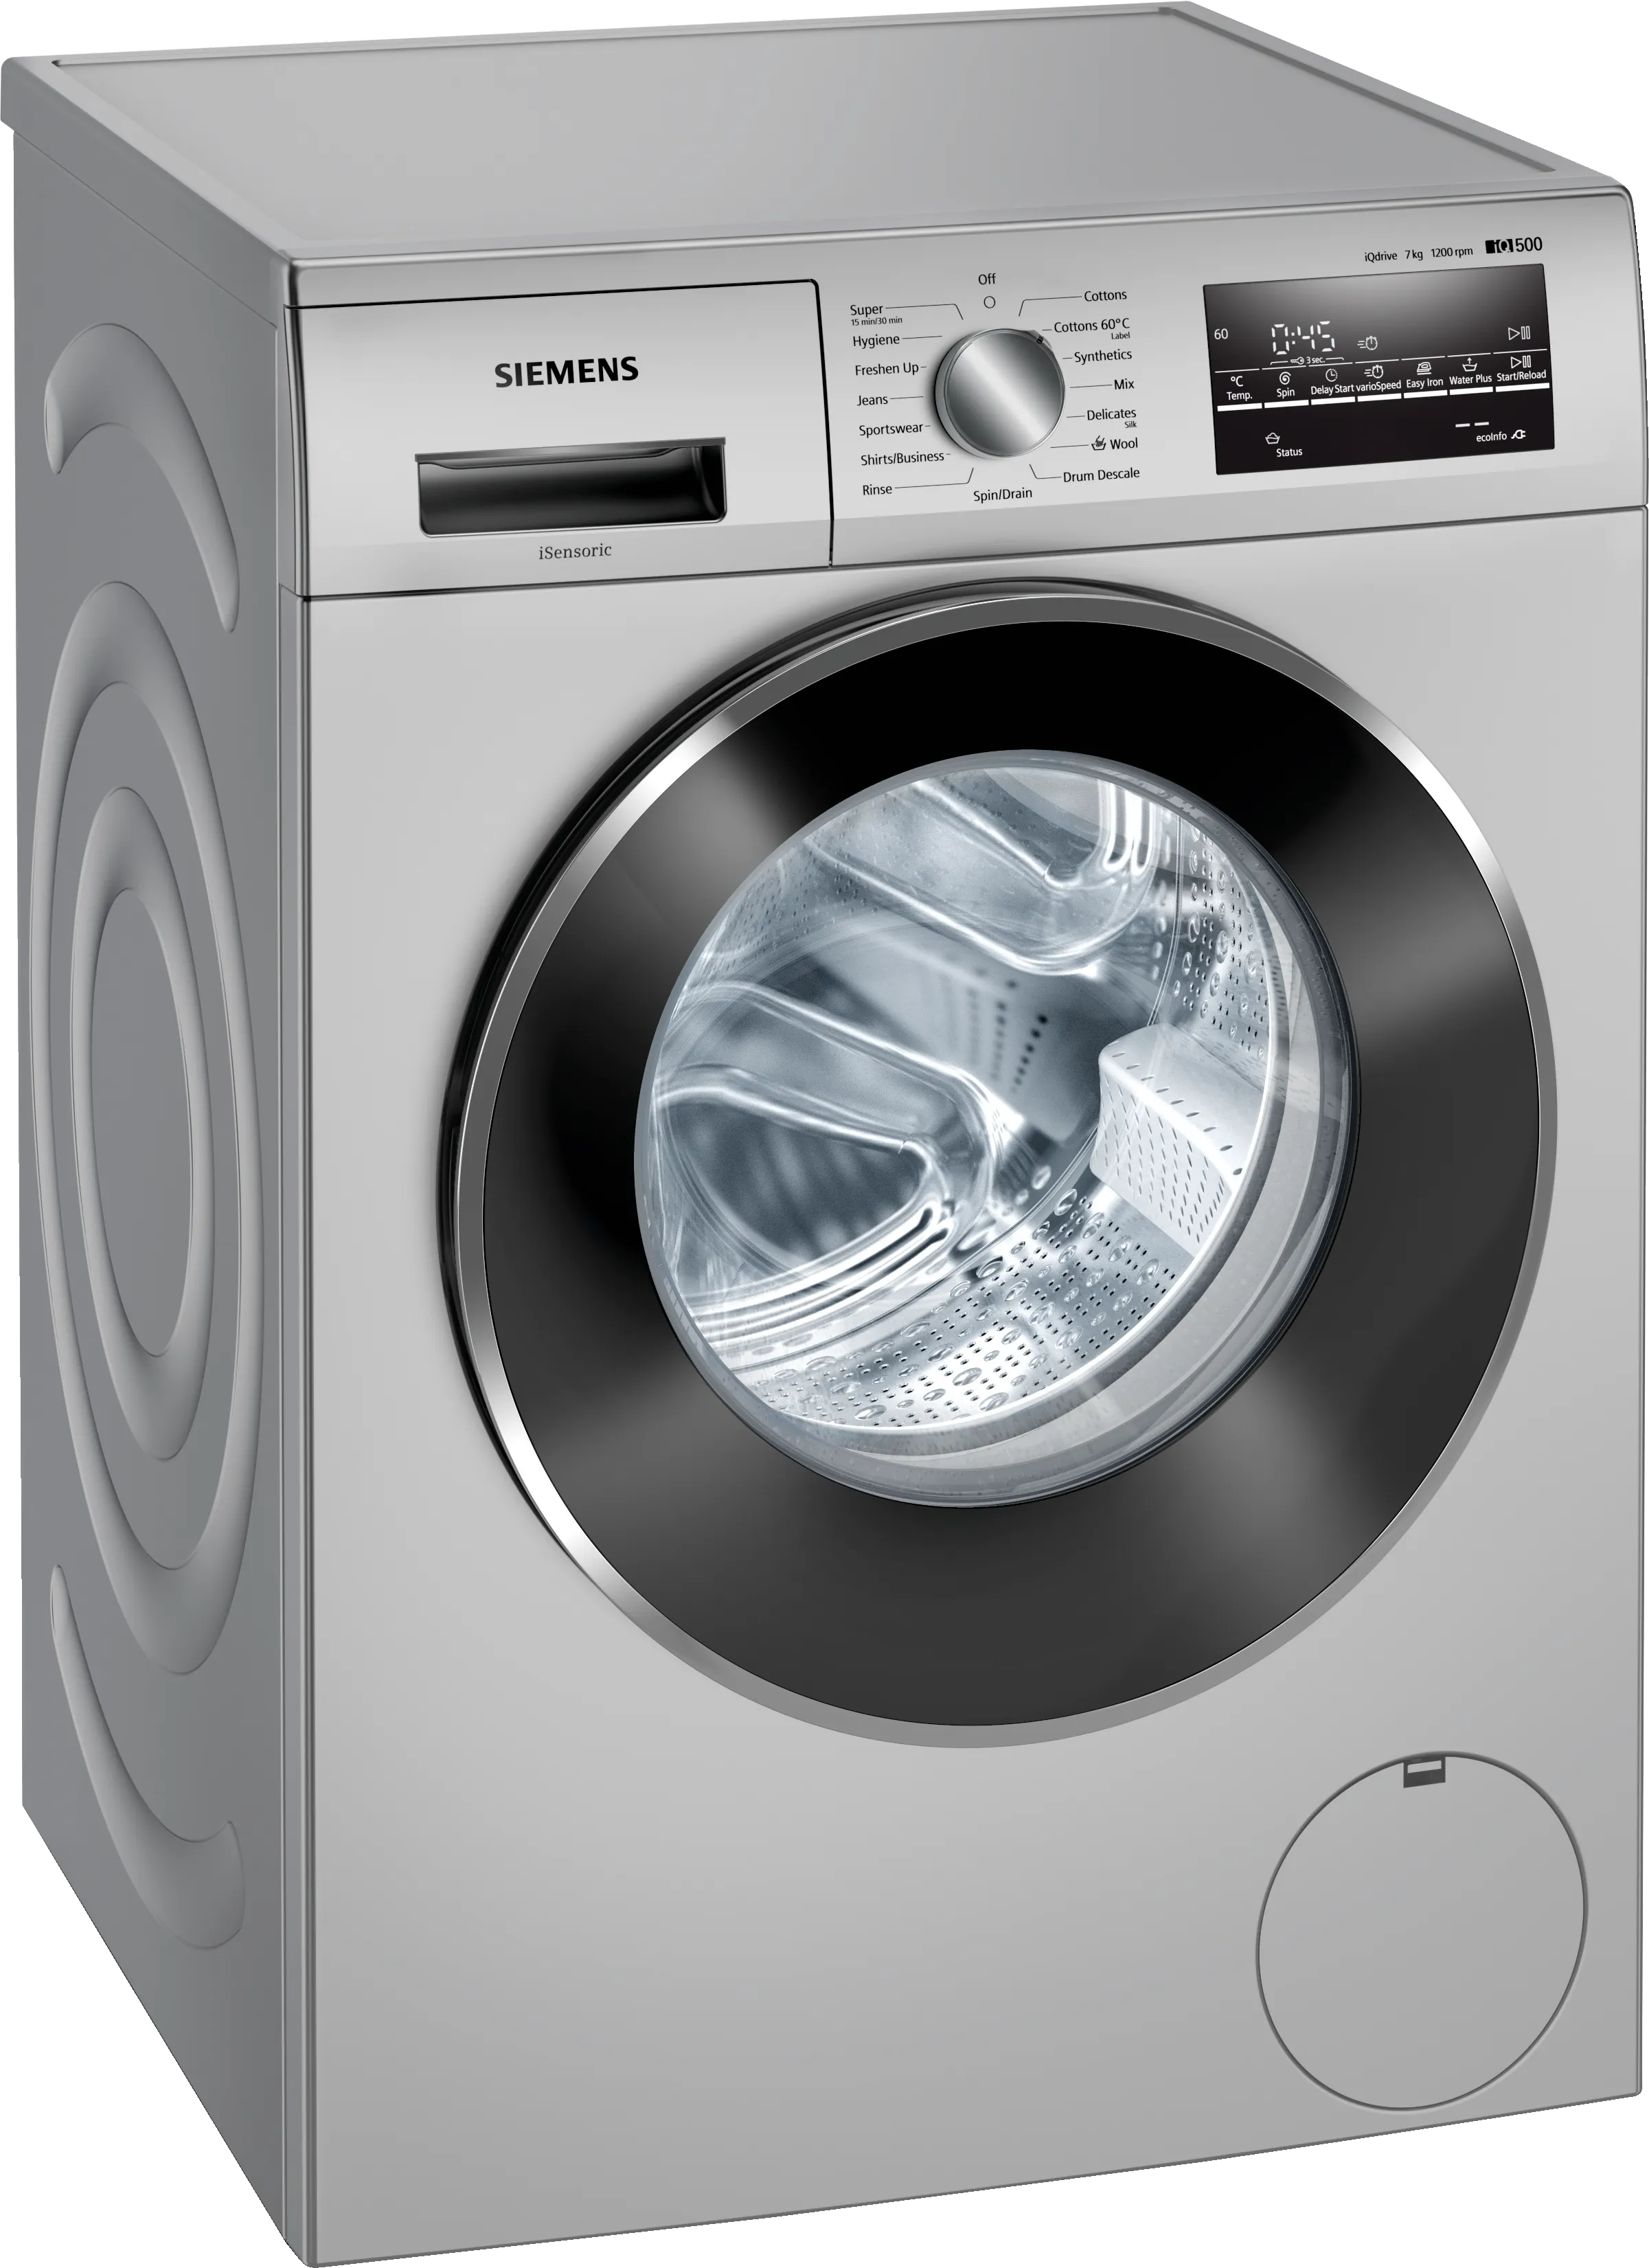 iQ500 washing machine, front loader 7 kg 1200 rpm 